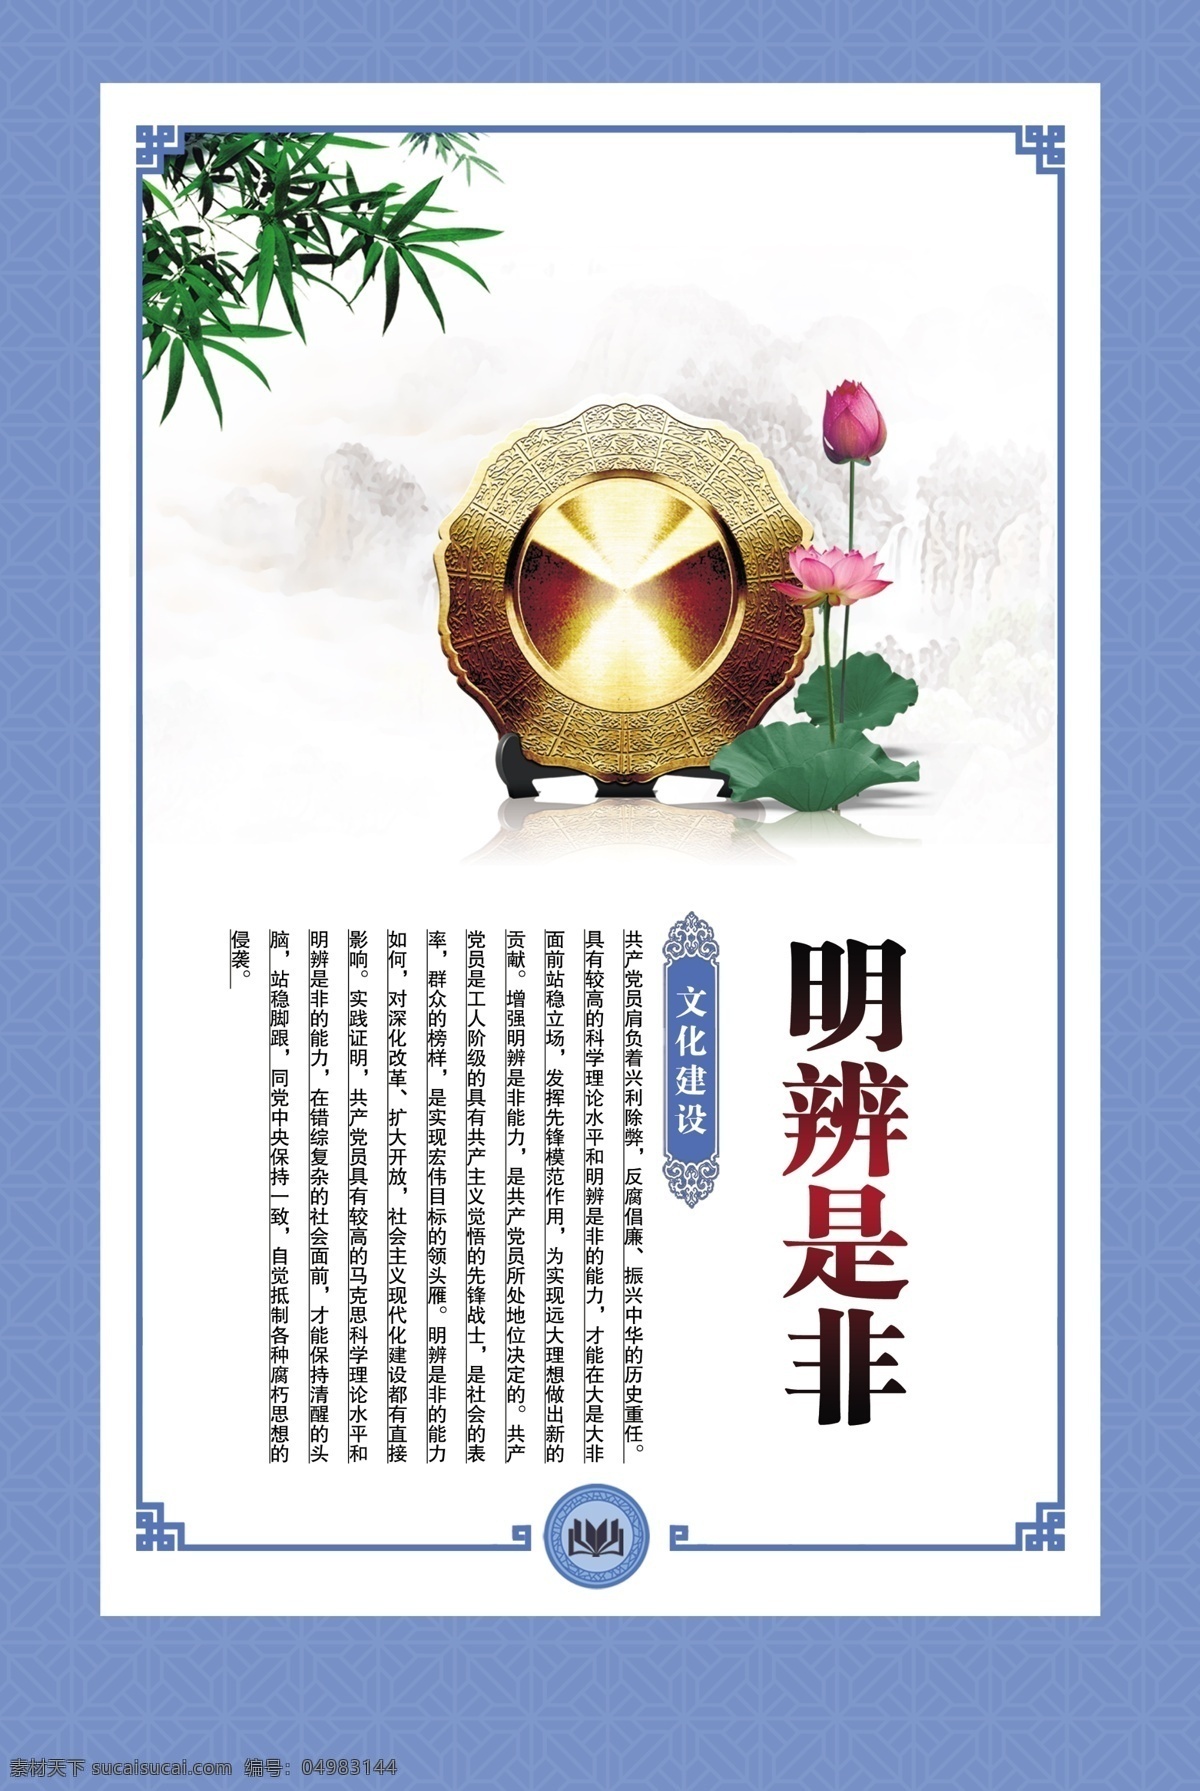 明辨是非 企业文化 蓝色背景 中国风图版 法治 法律 荷花 铜镜 竹子